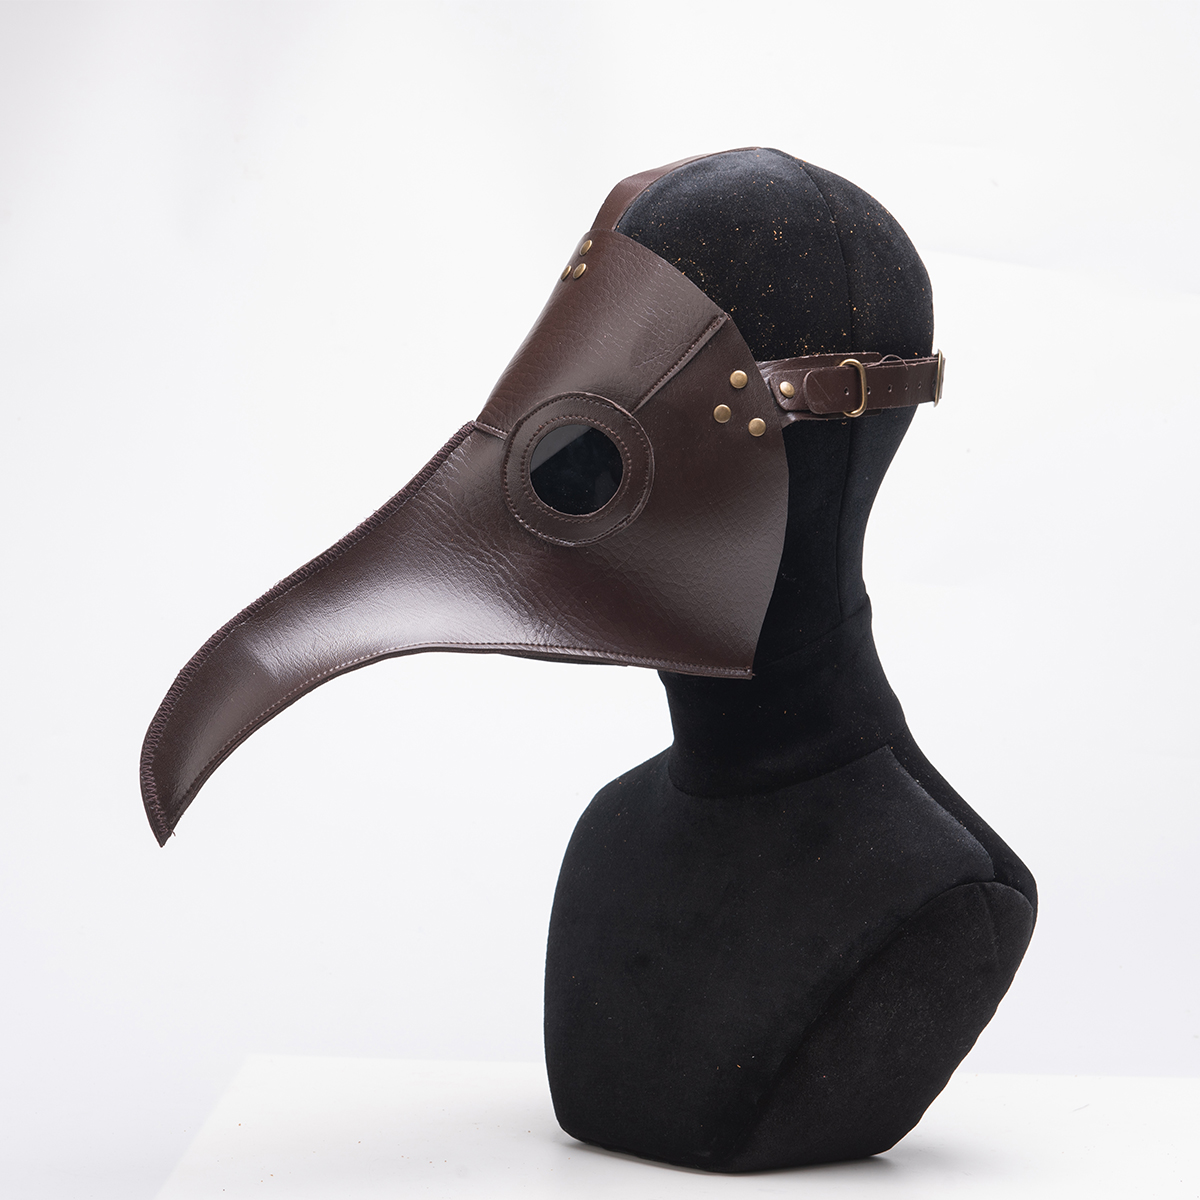 Halloween-Plague-Doctor-Bird-Steampunk-Mask-Long-Nose-Beak-Cosplay-Costume-Props-1350404